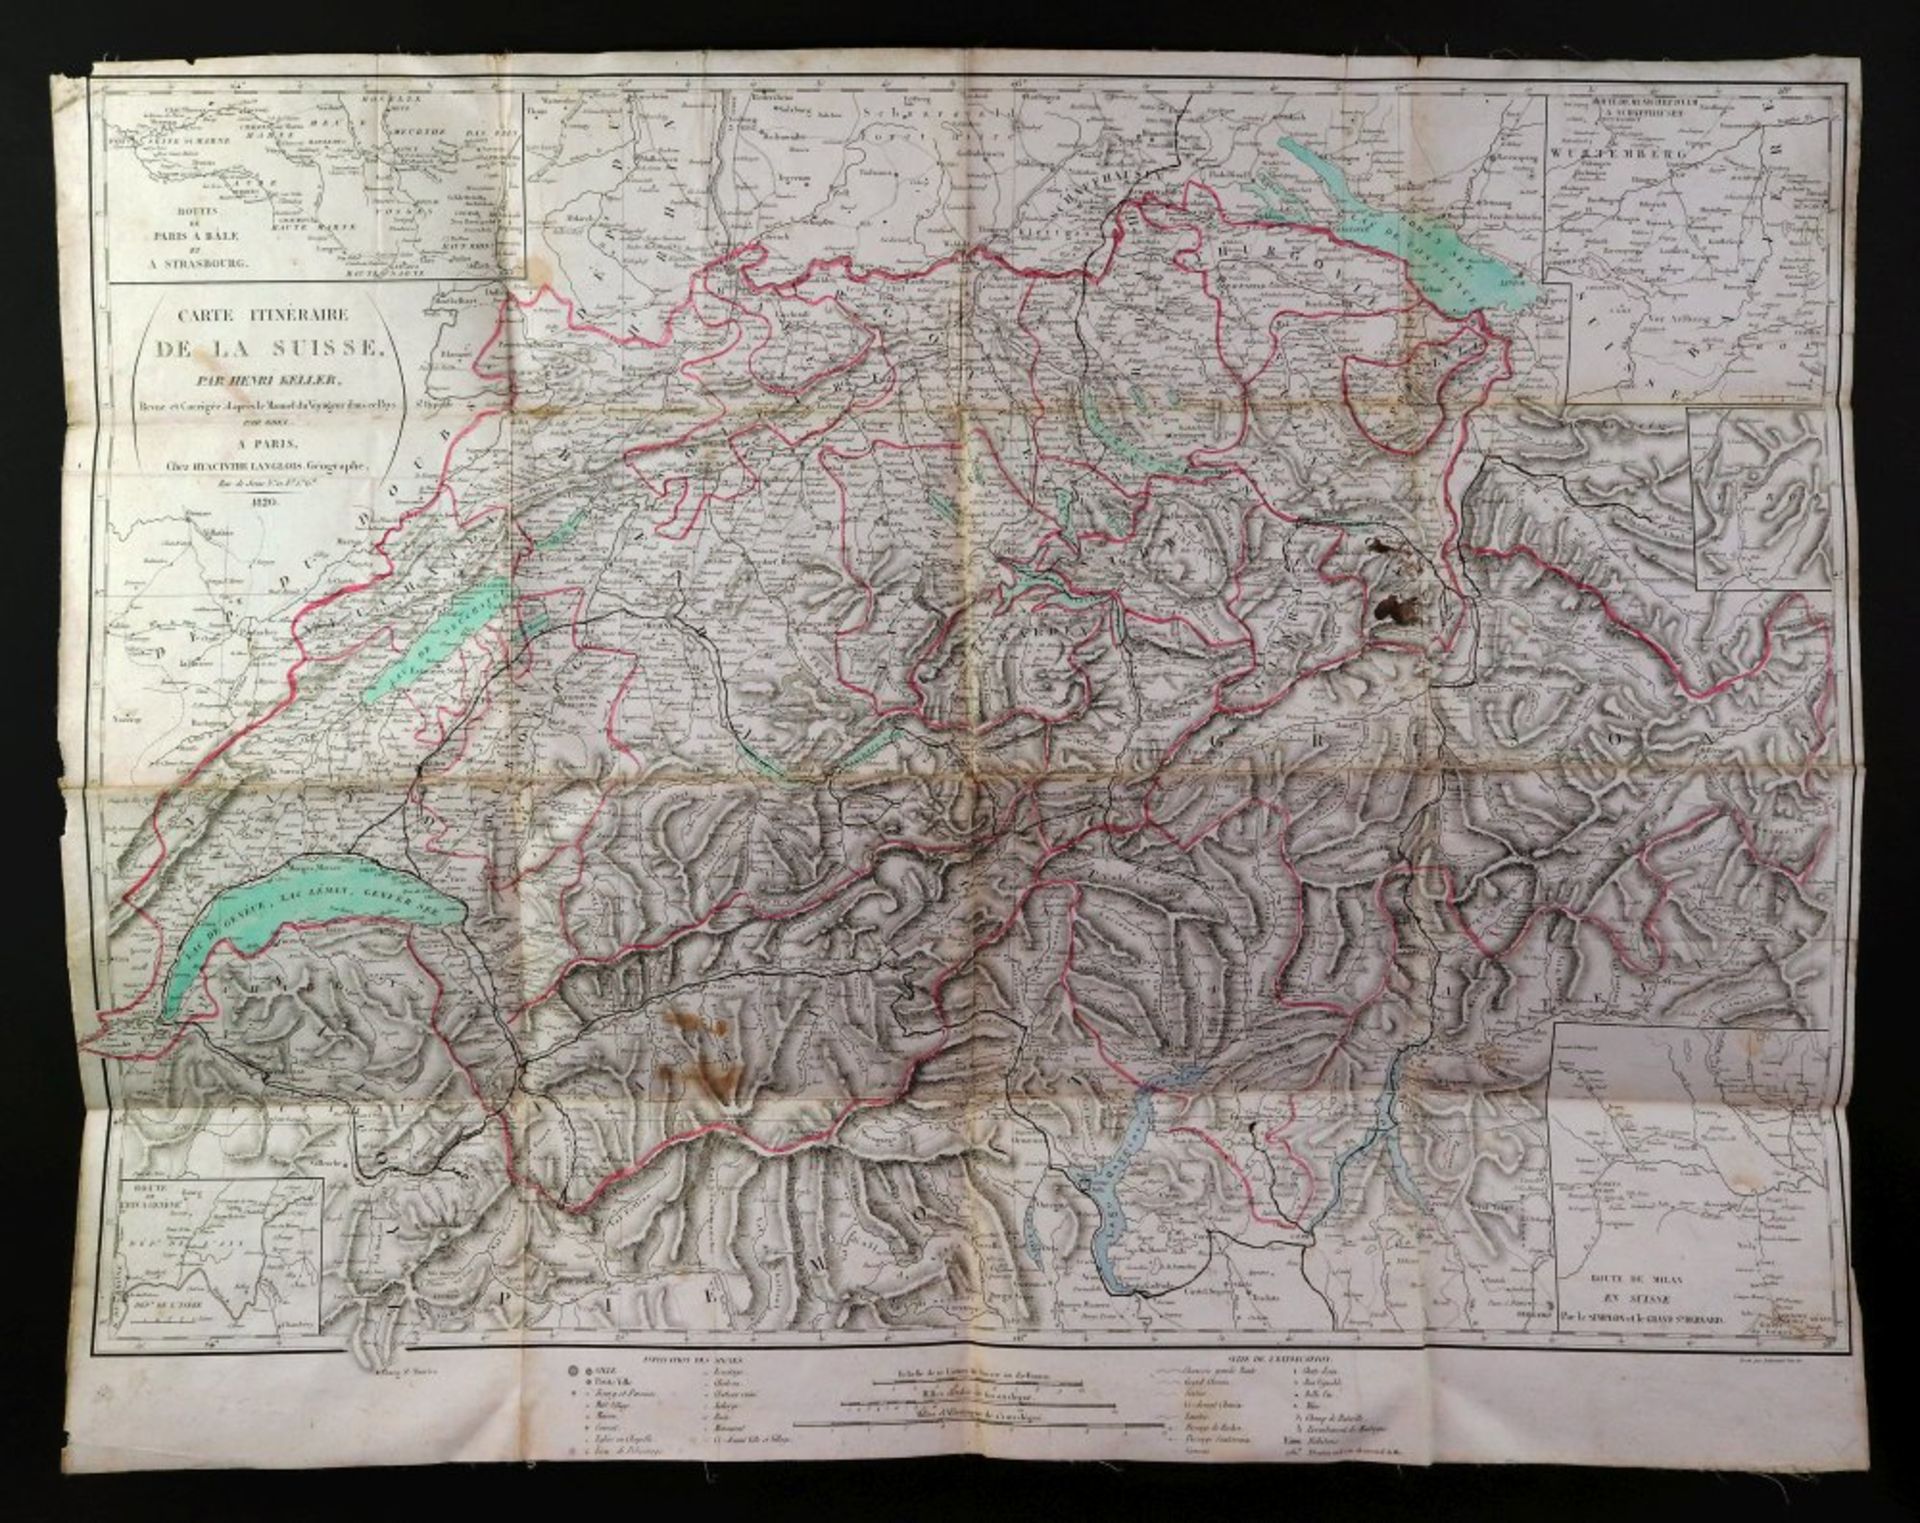 KELLER (Henri) Carte Itineraire De La Suisse, A Paris, 1820,